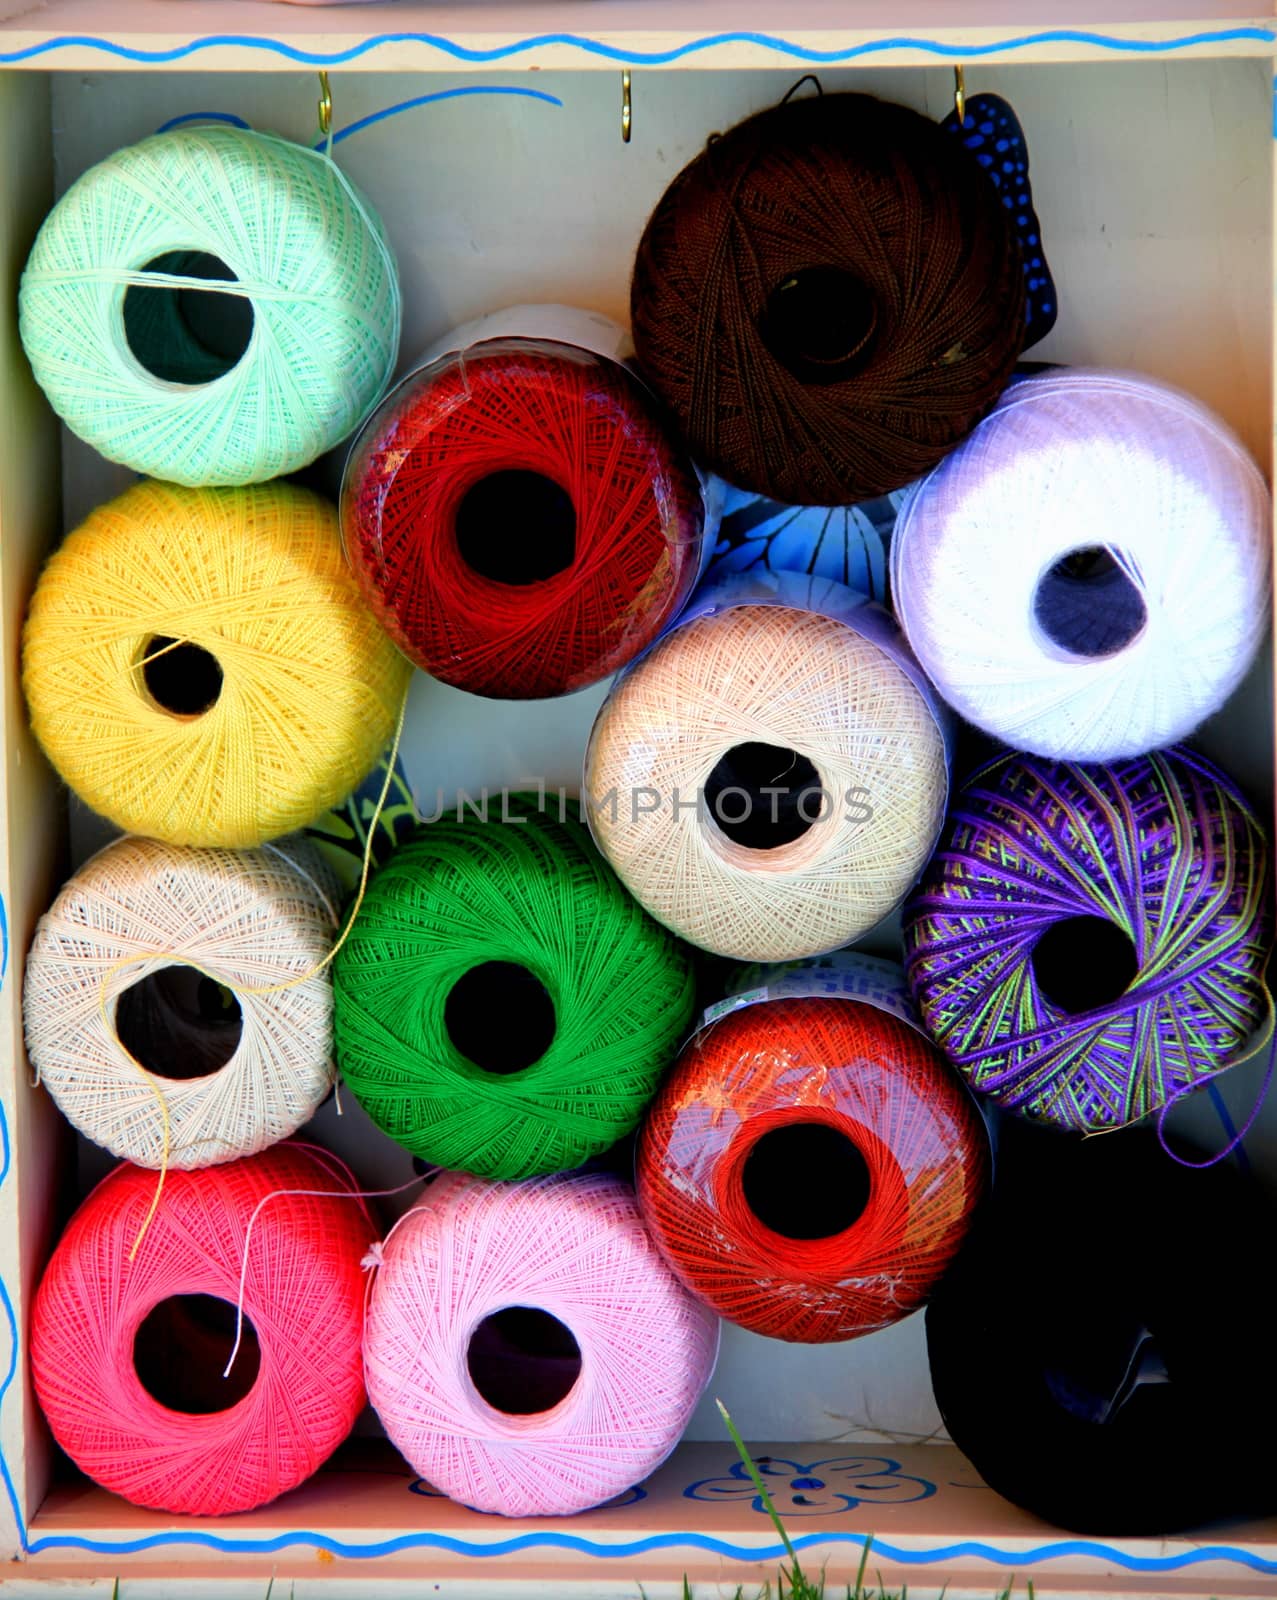 Colorful yarn. by oscarcwilliams